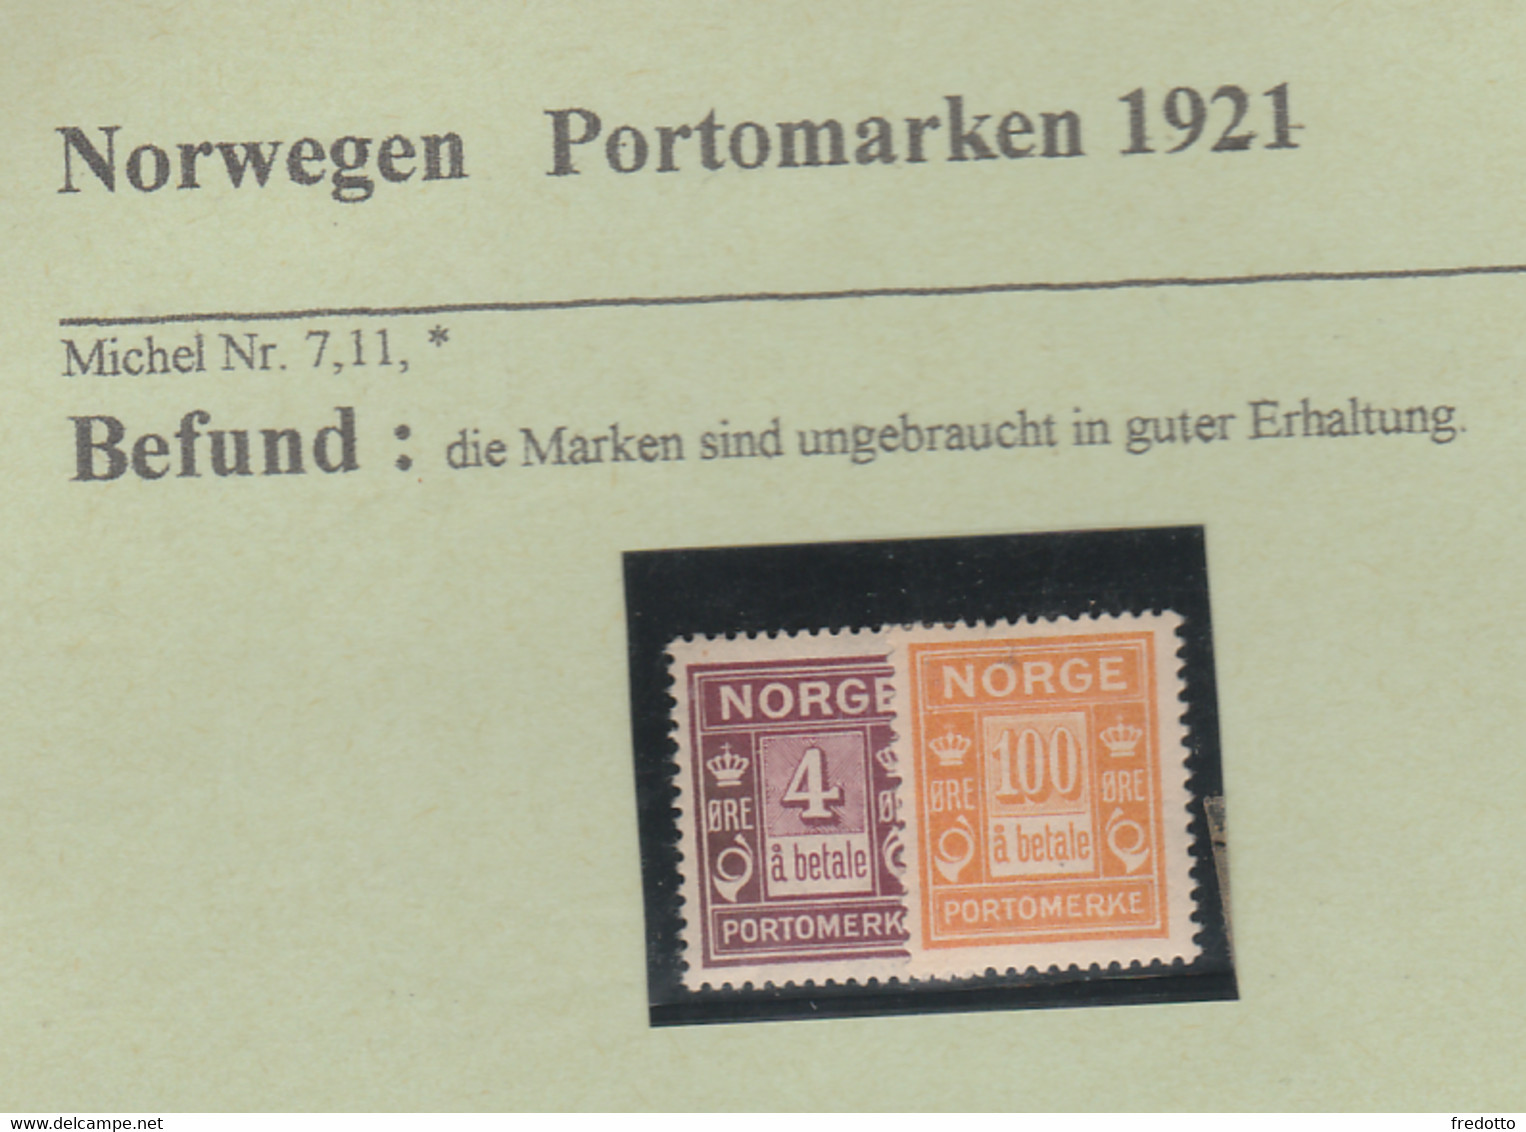 Norwegen-Briefmarken-ungebraucht * - Unused Stamps